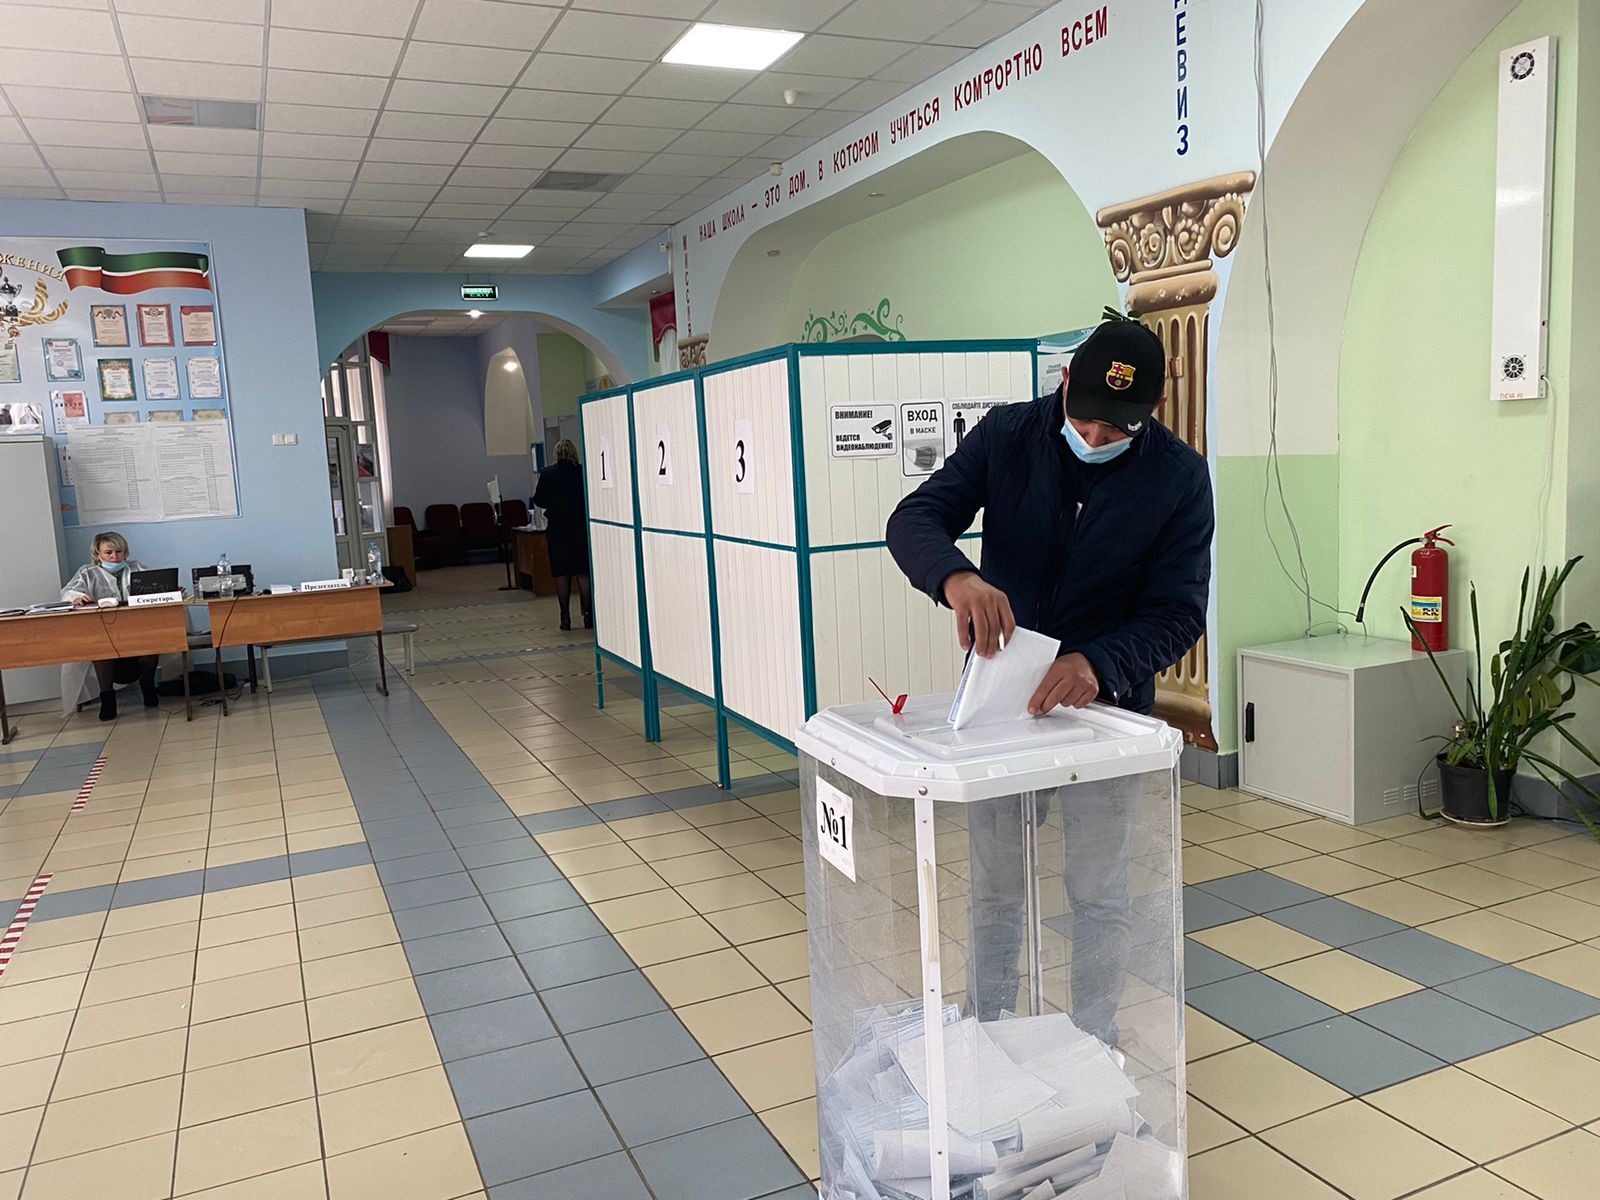 23,42% избирателей Пестречинского района проголосовали в первый день выборов